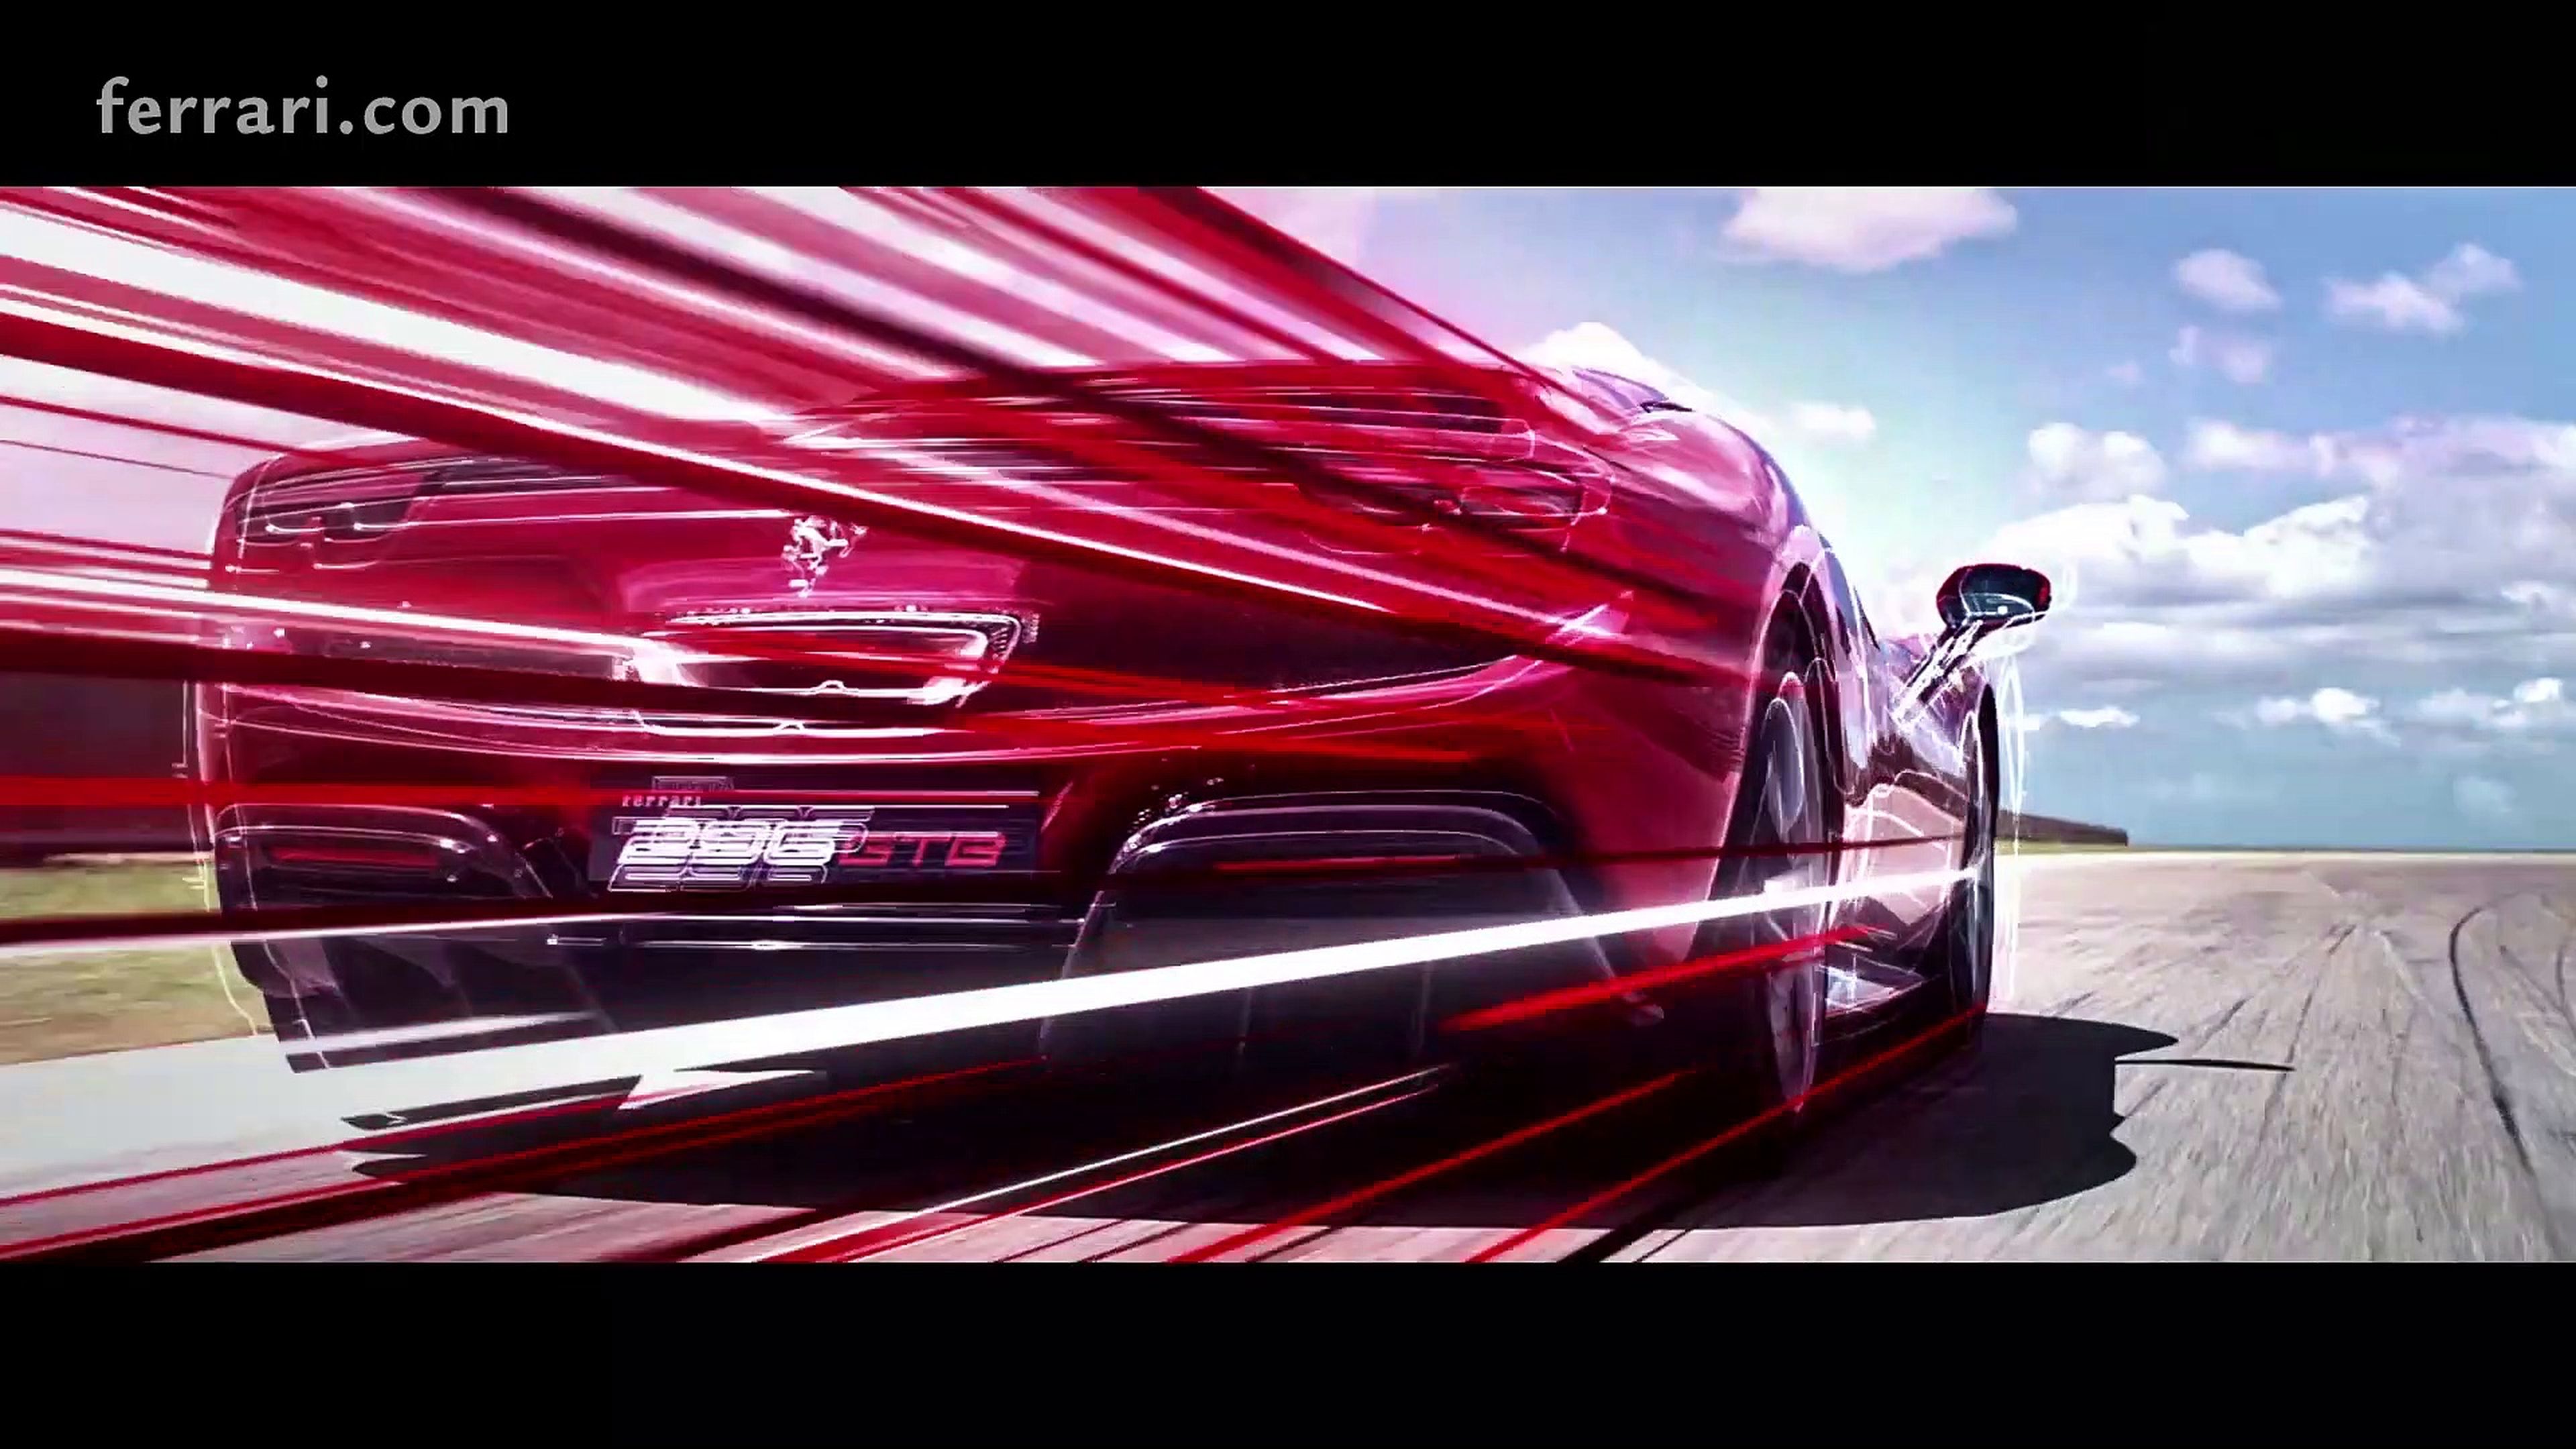 VÍDEO: Así enseña Ferrari su nuevo 296 GTB, ¡adrenalina pura!